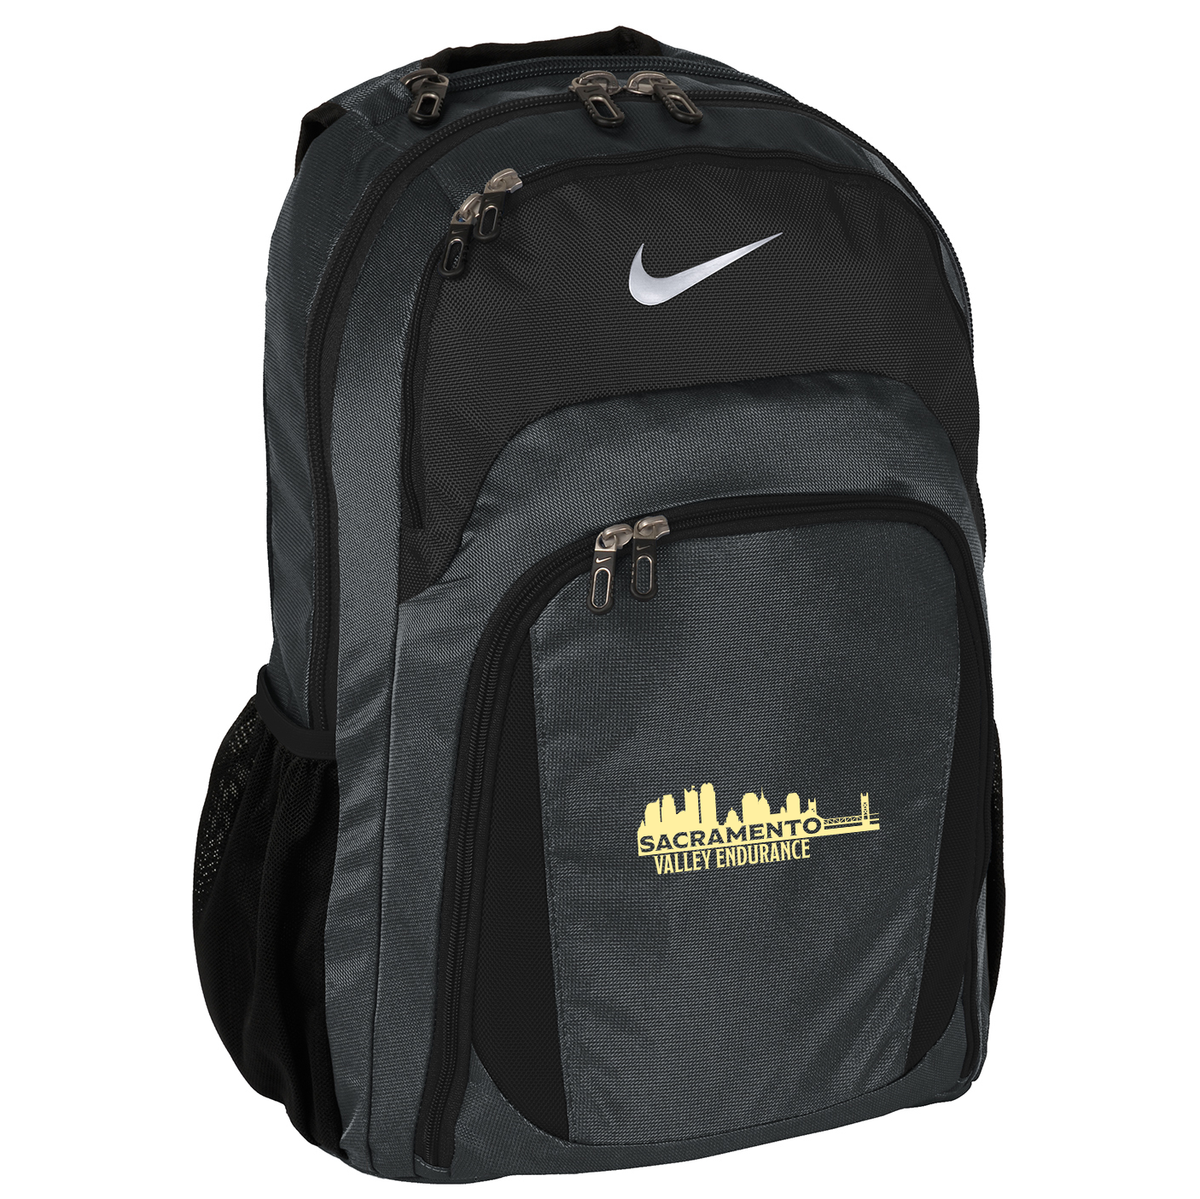 Sacramento Valley Endurance Nike Backpack